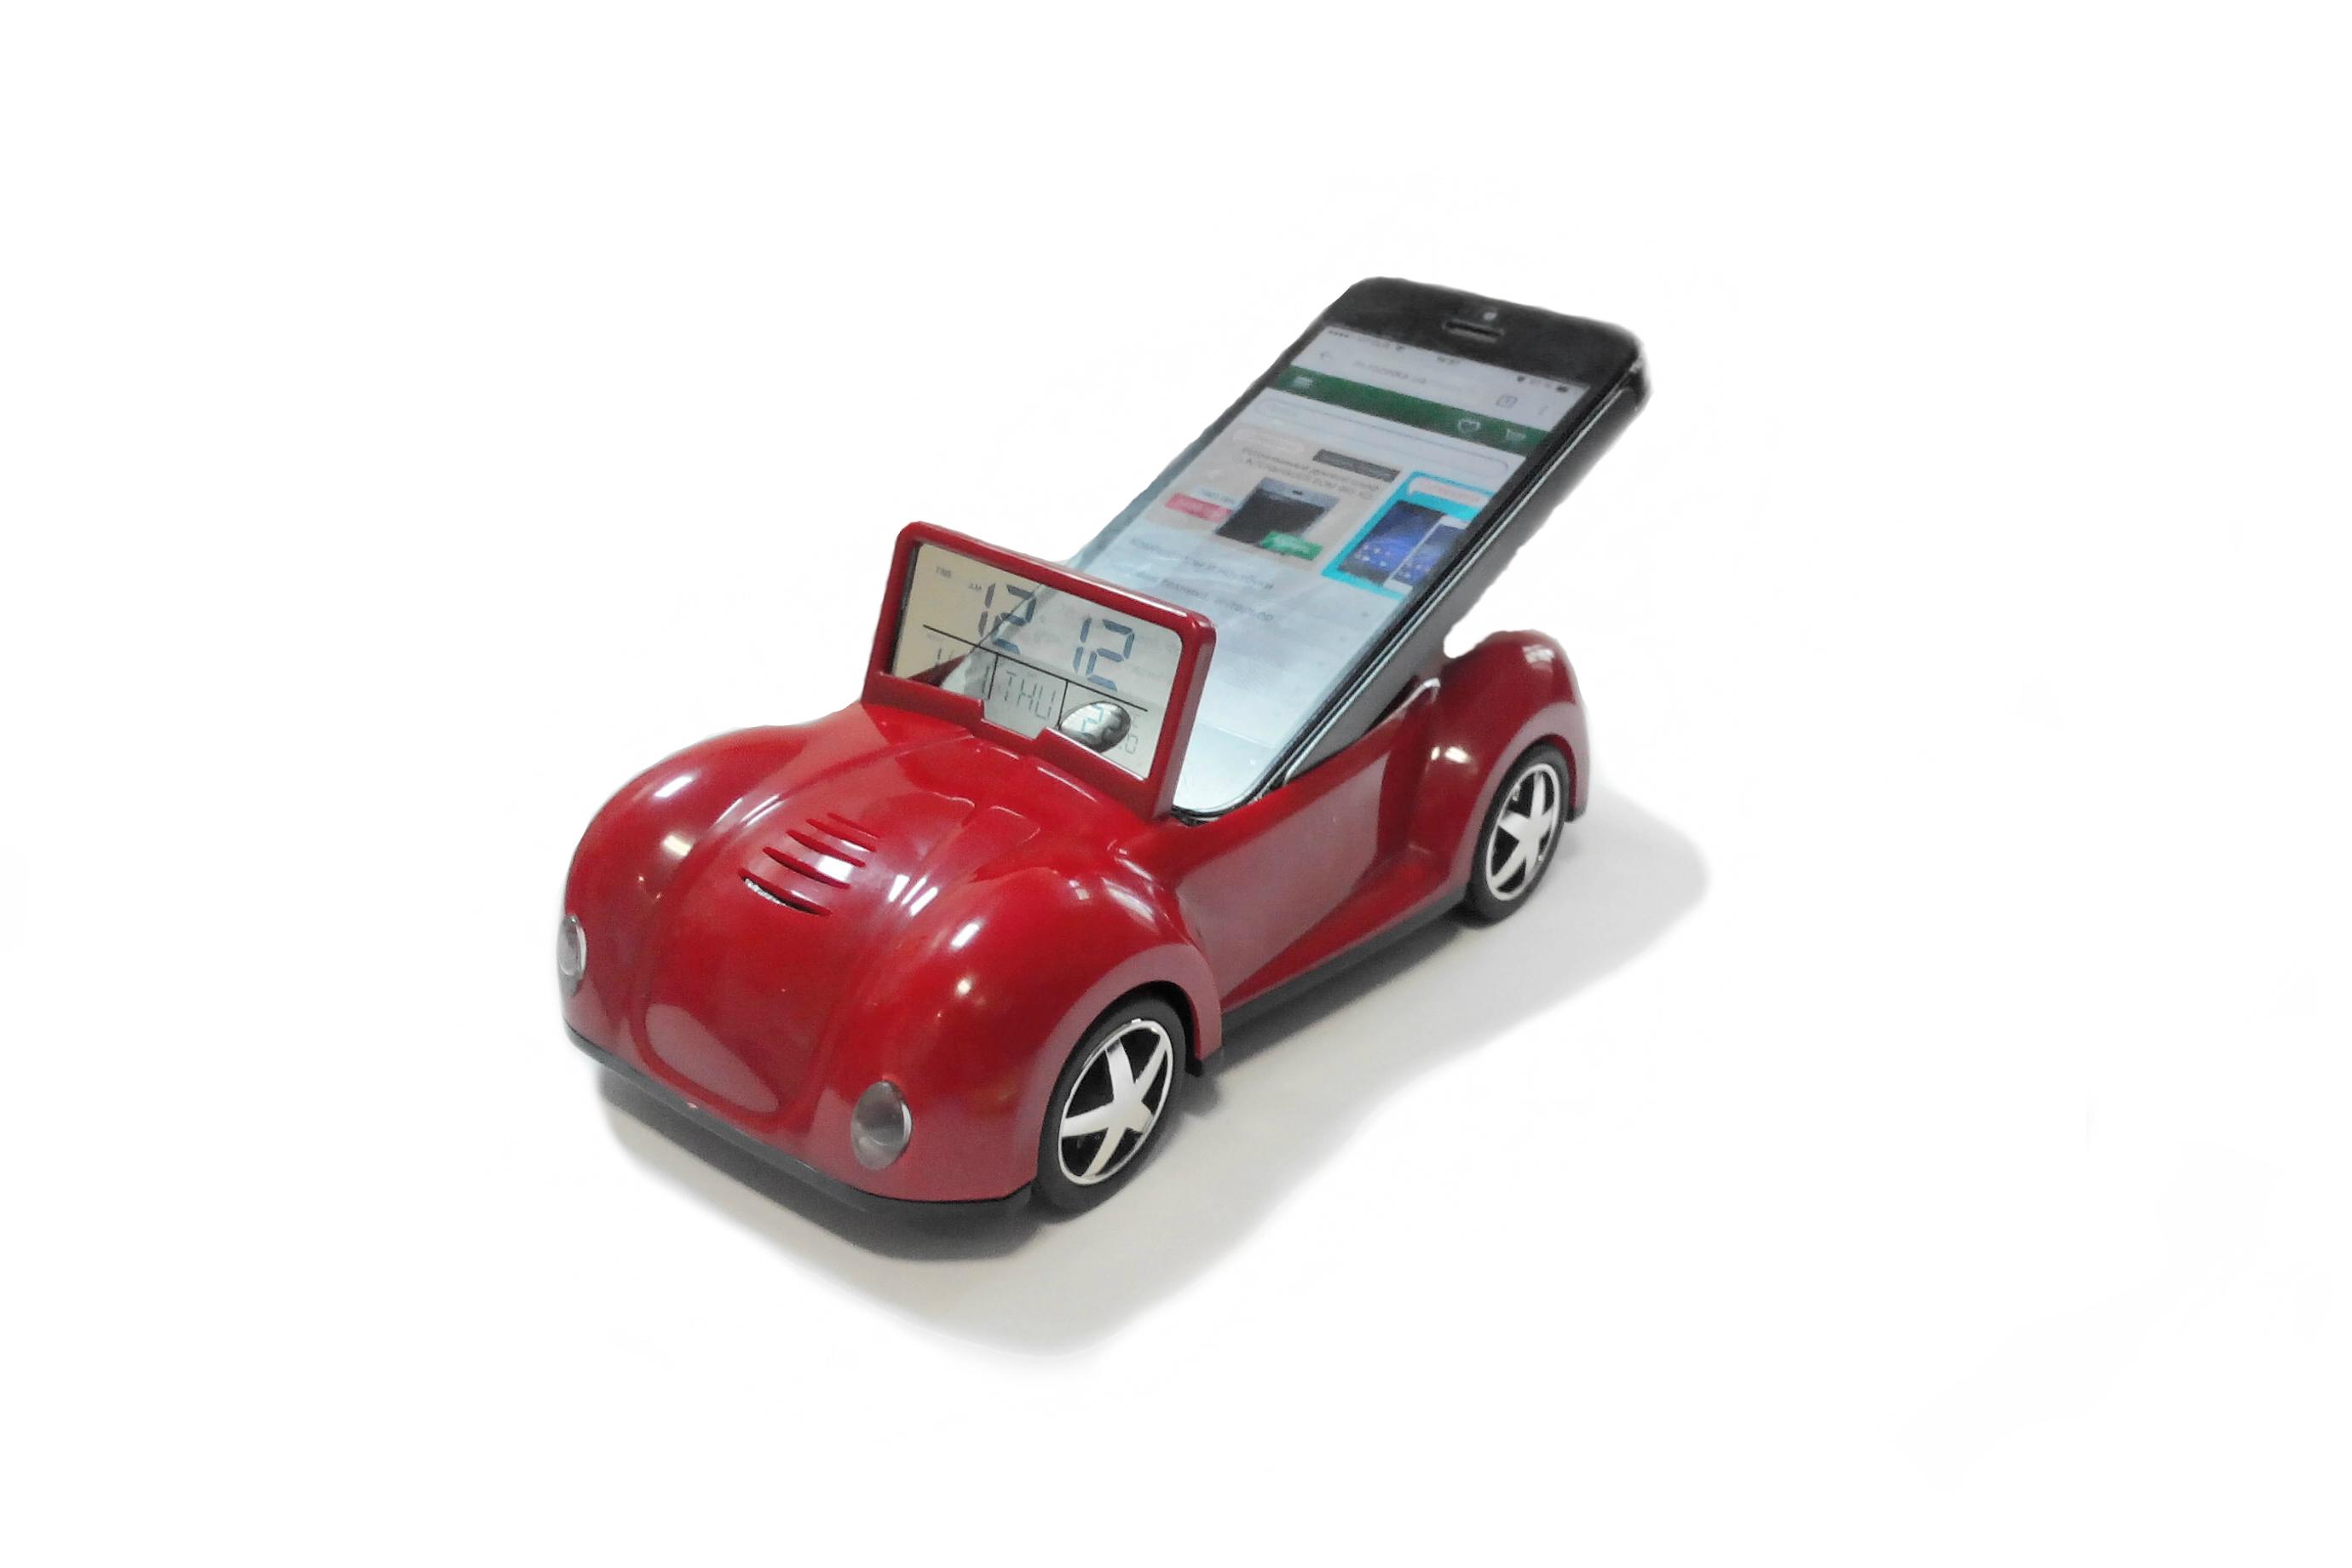 Держатель для смартфона с часами UFT CarPad